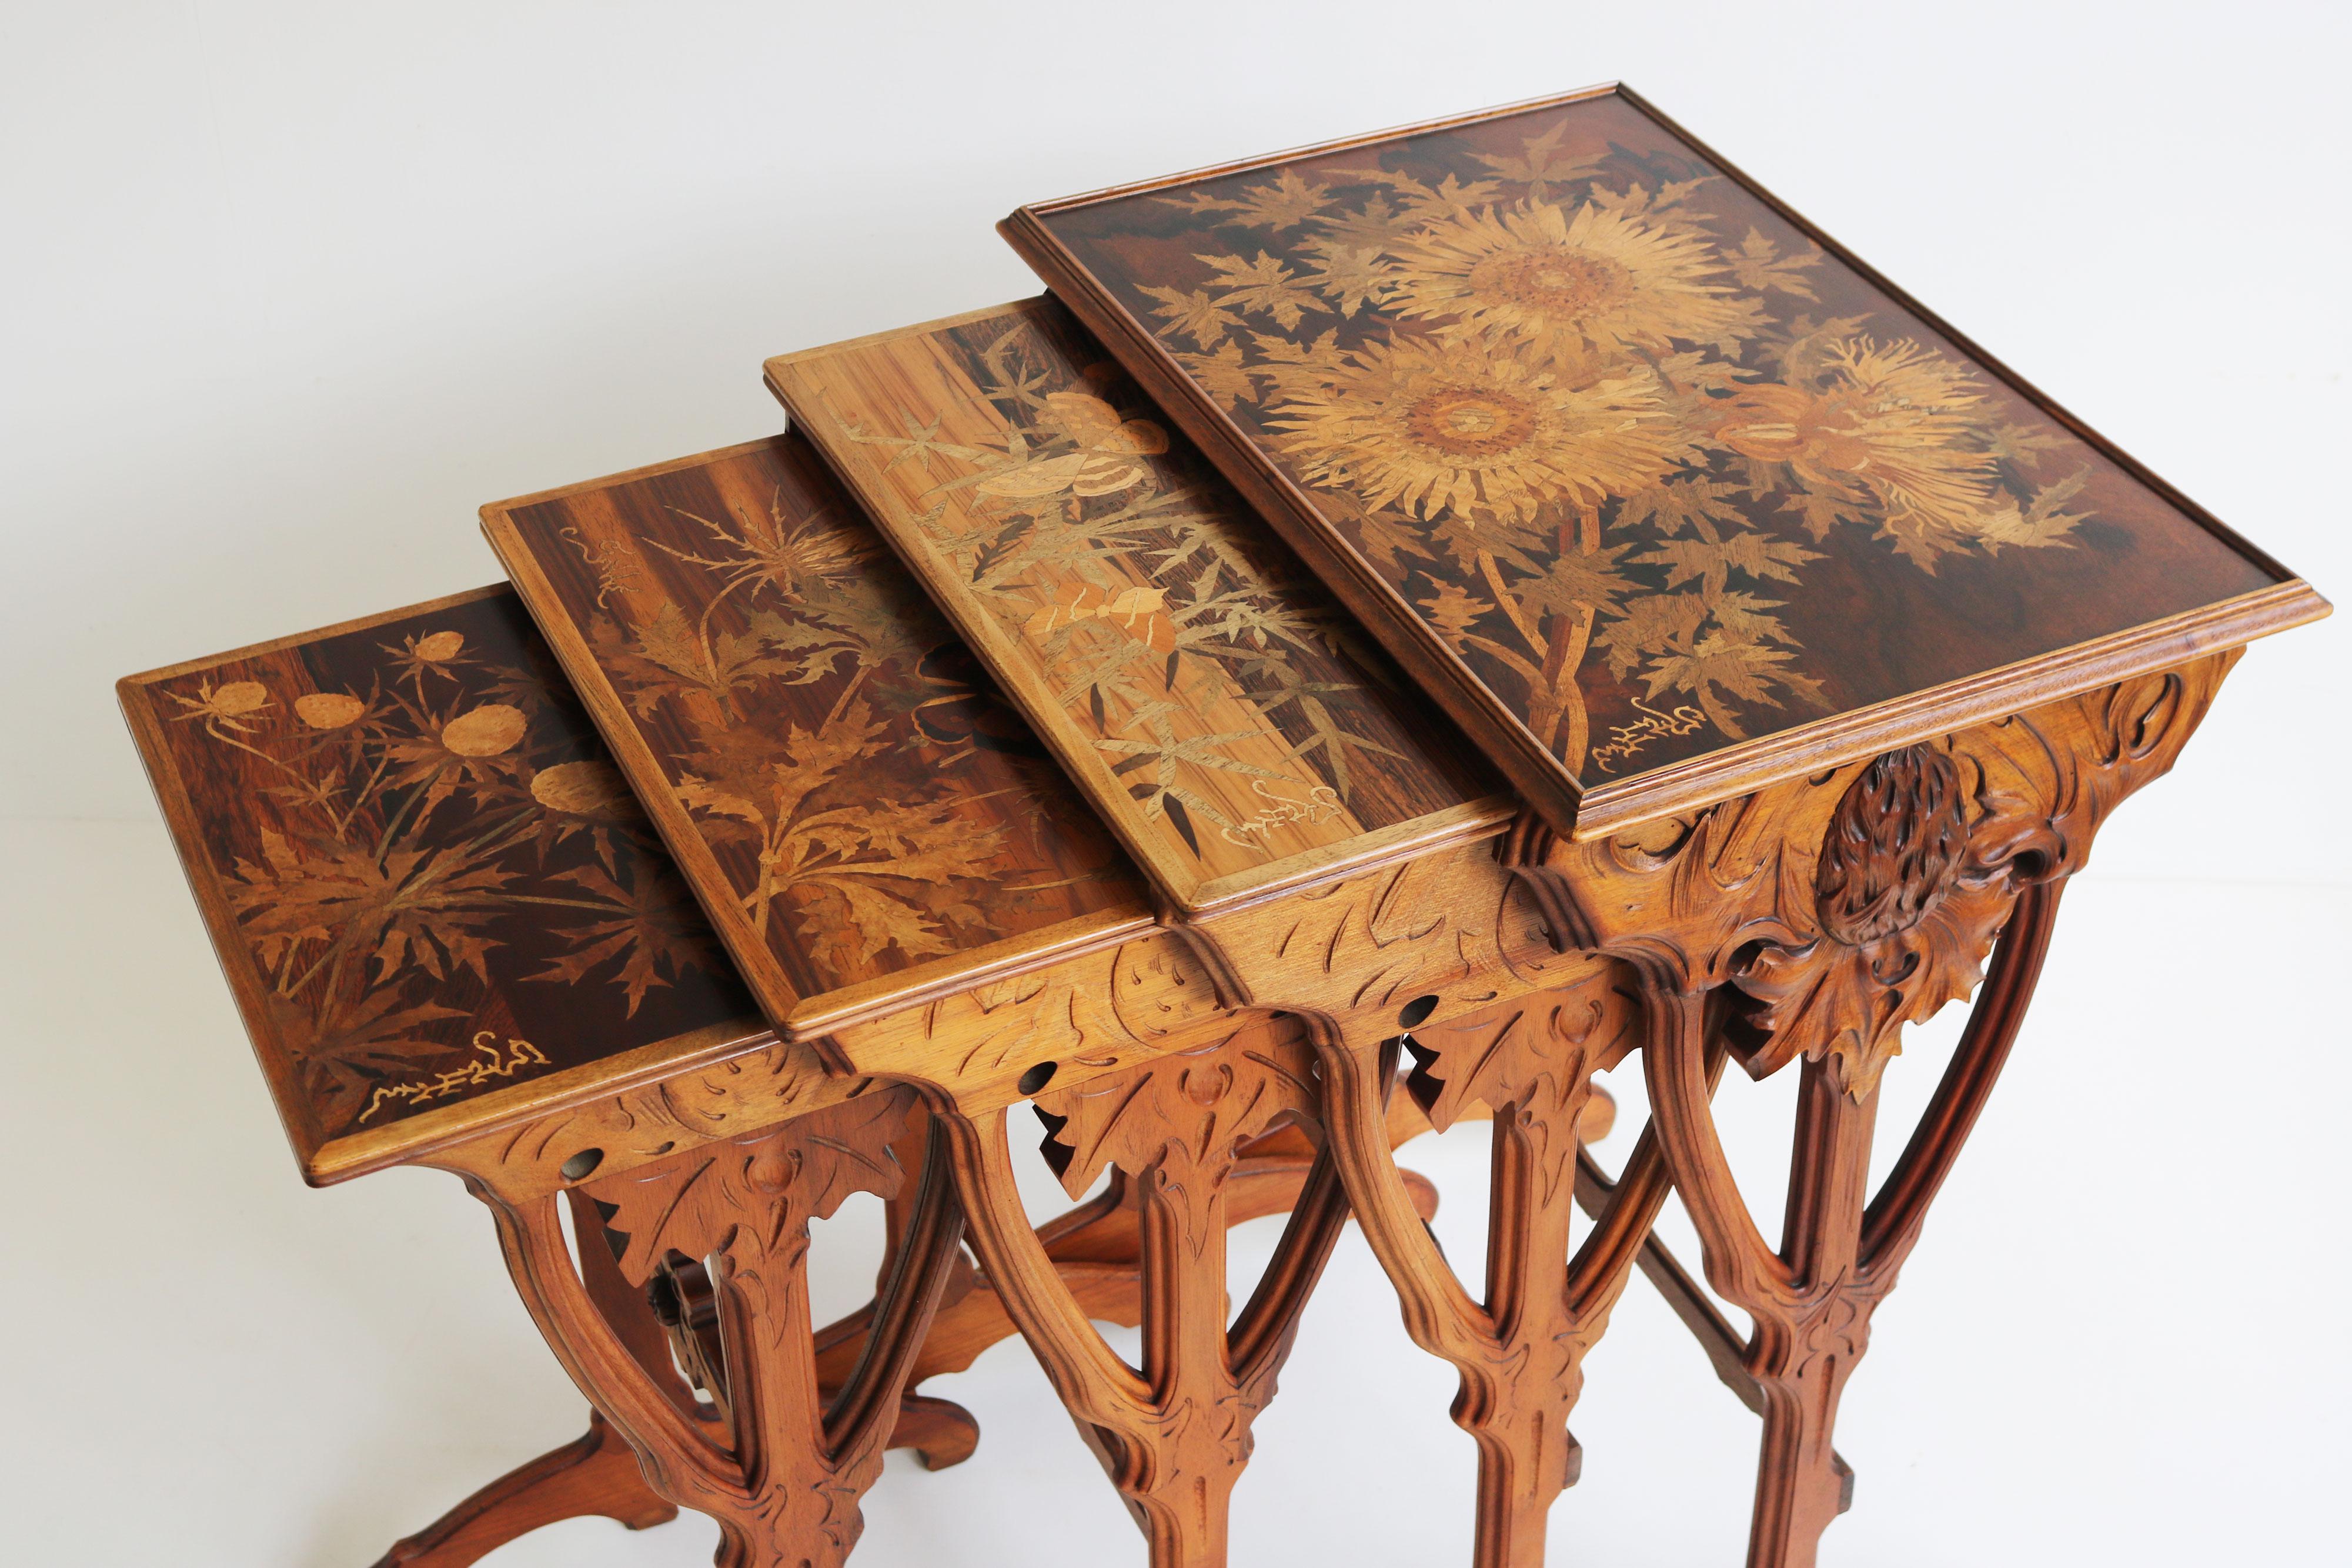 Ensemble de quatre tables gigognes de style Art nouveau français par Emile Gallé, décorées de marqueterie de bois fruitier dans un motif de chardons de carlile et de papillons. Chaque tableau représente un stade de croissance différent, le plus